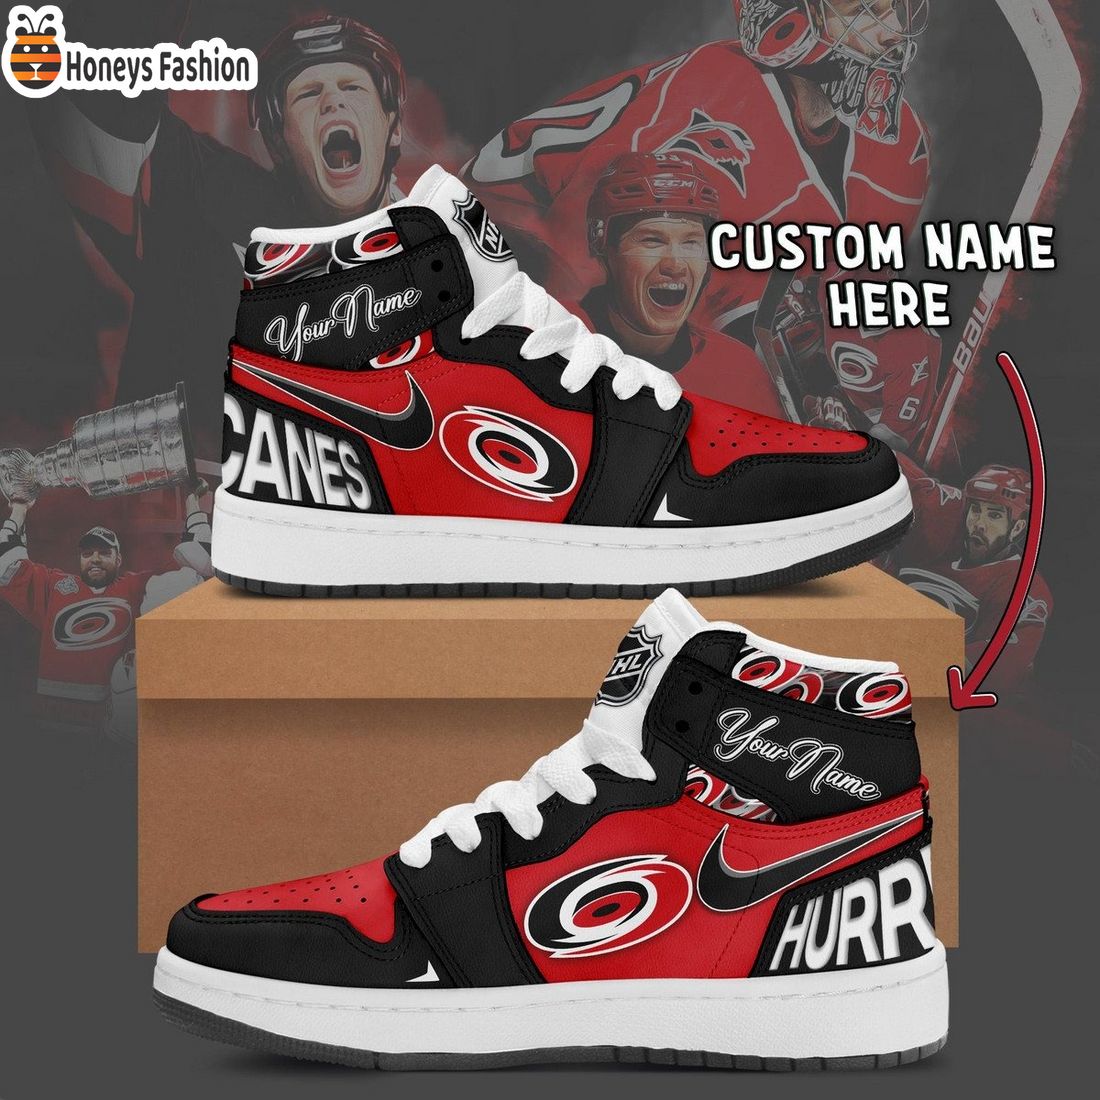 Carolina Hurricanes NHL Custom Name Air Jordan 1 Sneakers